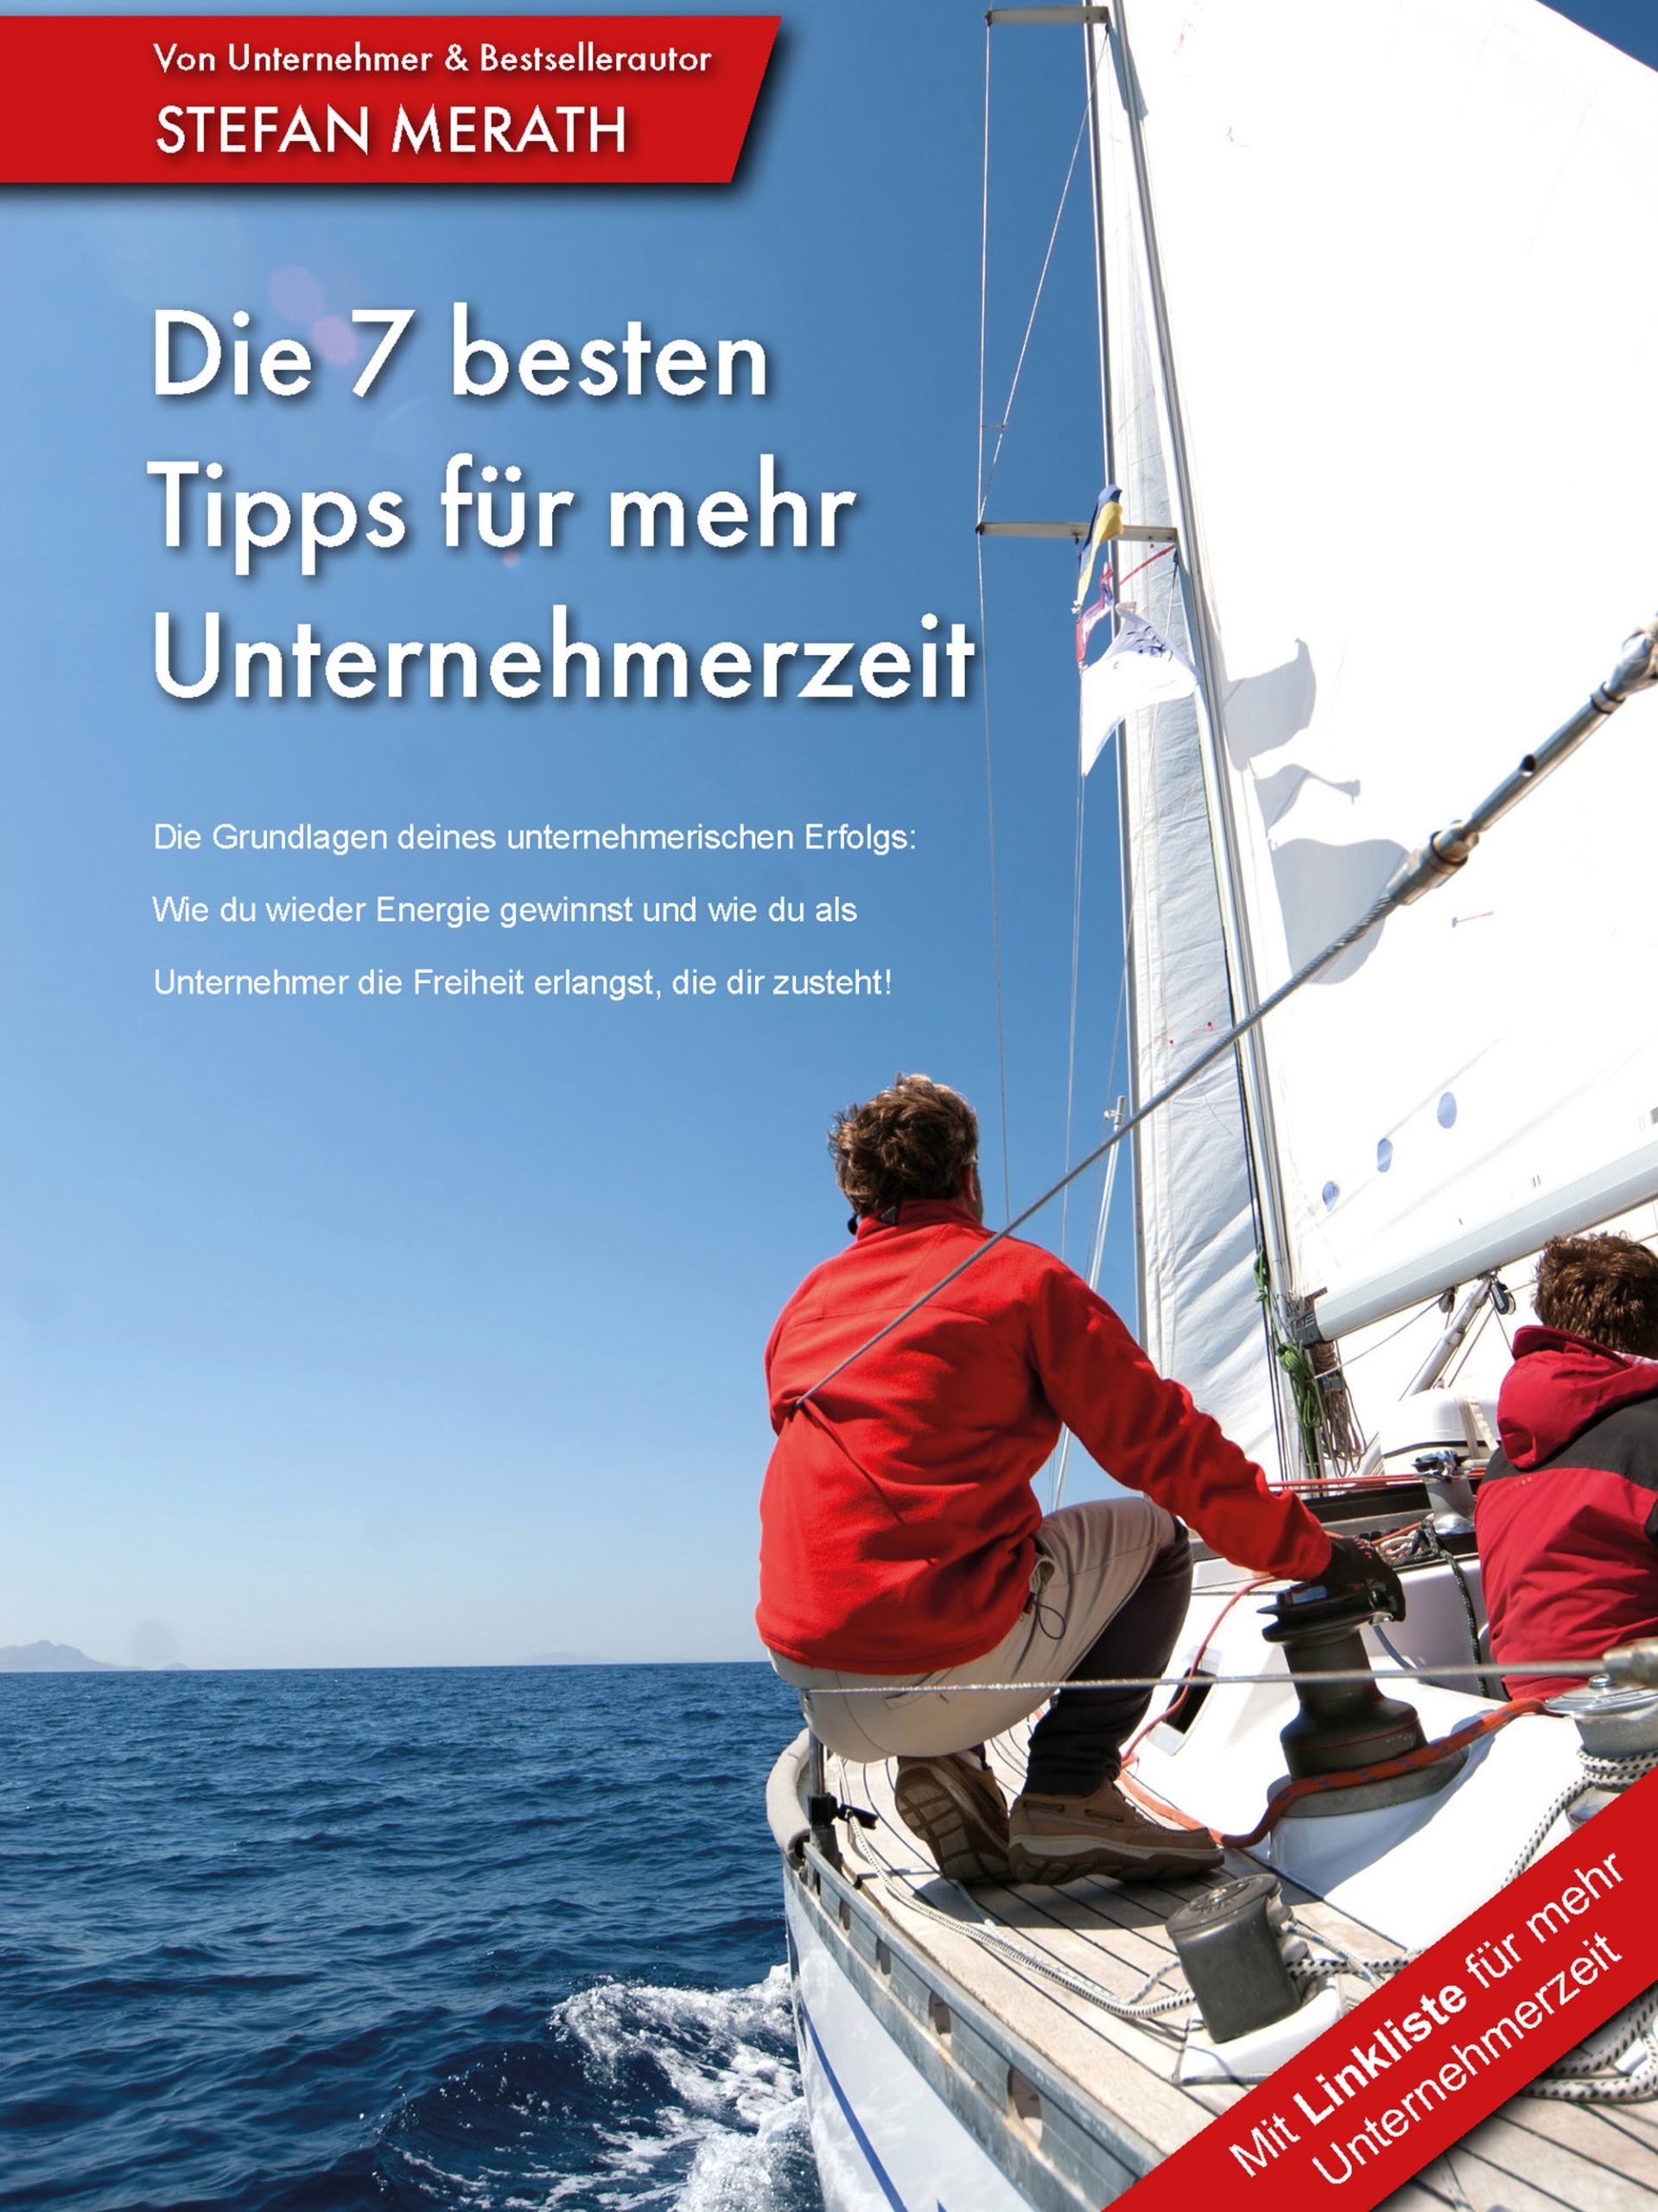 e-book von stefan merath für mehr unternehmerzeit mit segelboot-cover